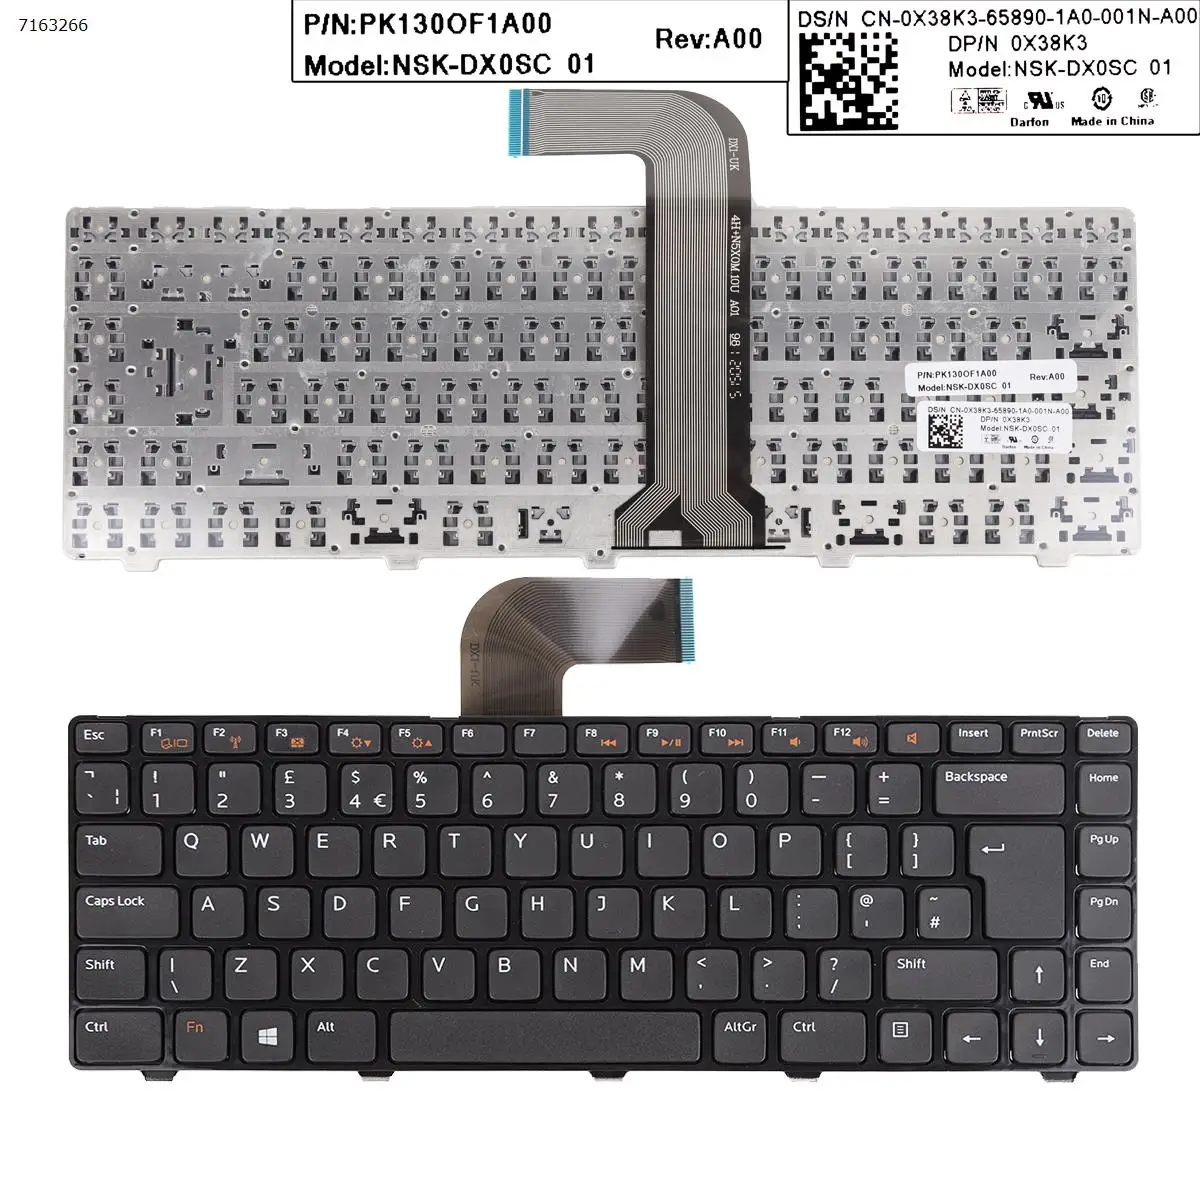 

Английская клавиатура для ноутбука DELL XPS L502, новая модель Inspiron 14R/Inspiron N4110 M4110 N4050 M4040 N411Z, глянцевая черная рамка